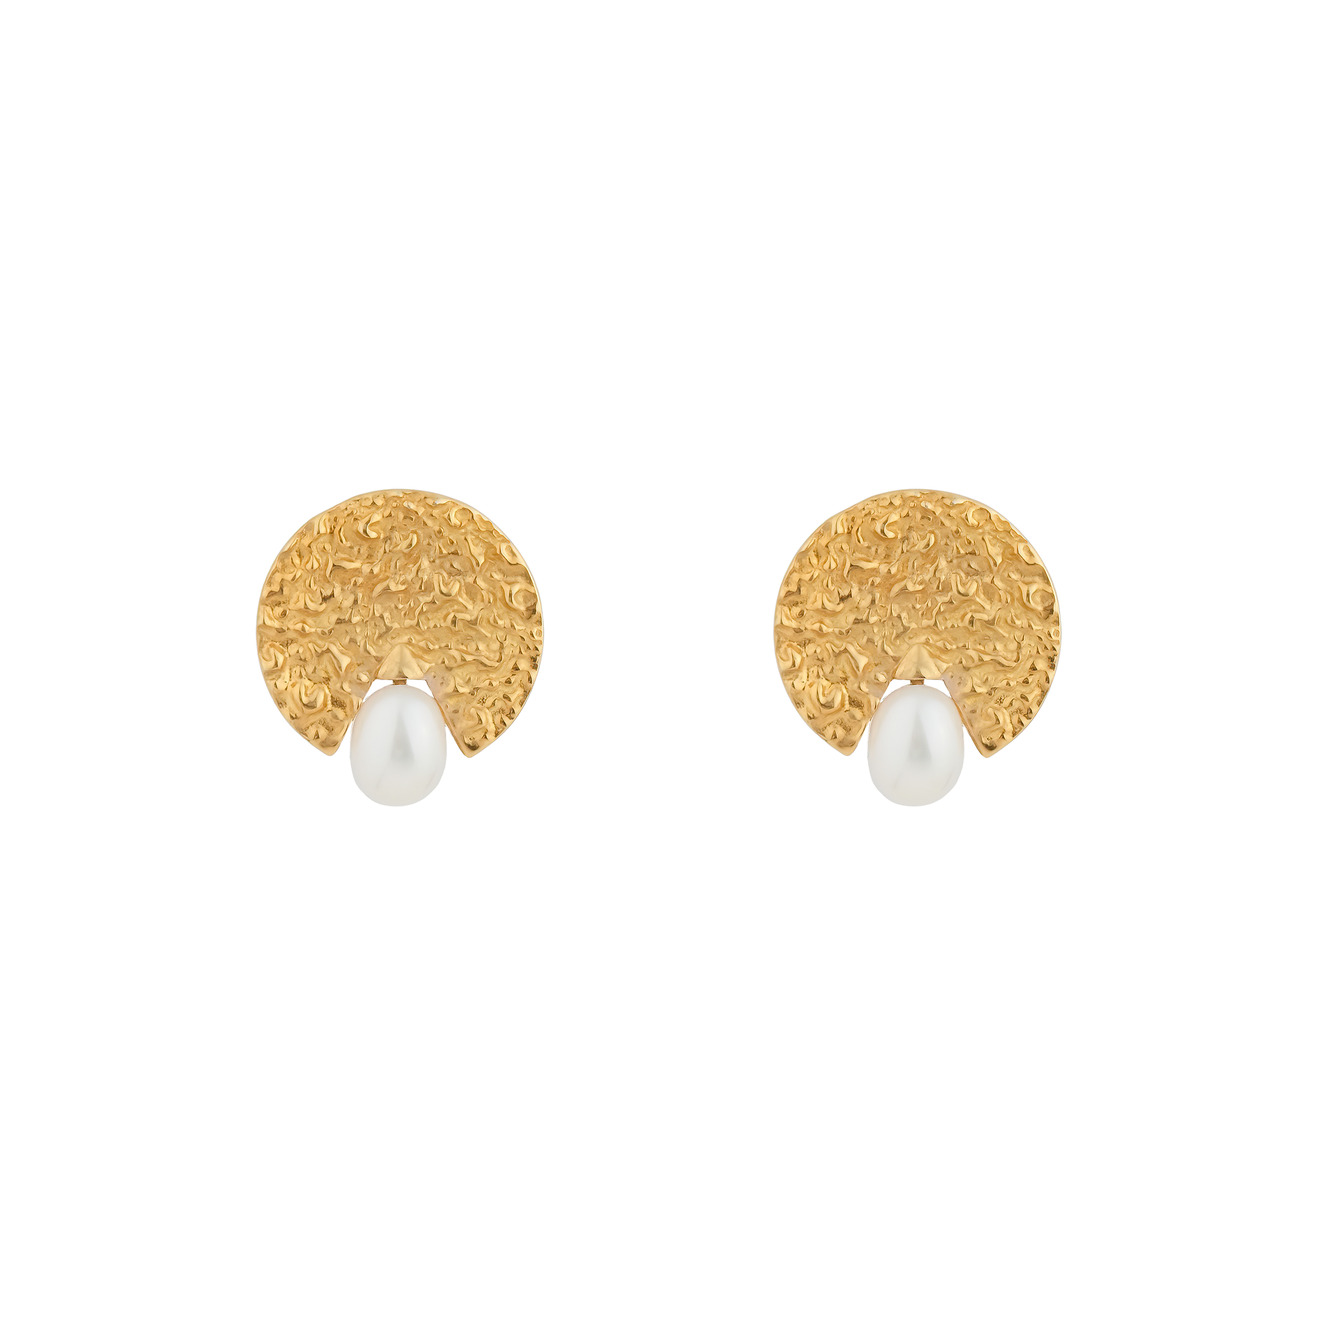 11 Jewellery Позолоченные серьги Pragina gold из серебра с жемчугом золотистый куб серьги кубические серьги гвоздики позолоченные серьги серьги гвоздики квадратные серьги позолоченные комплектующие 11 3 мм